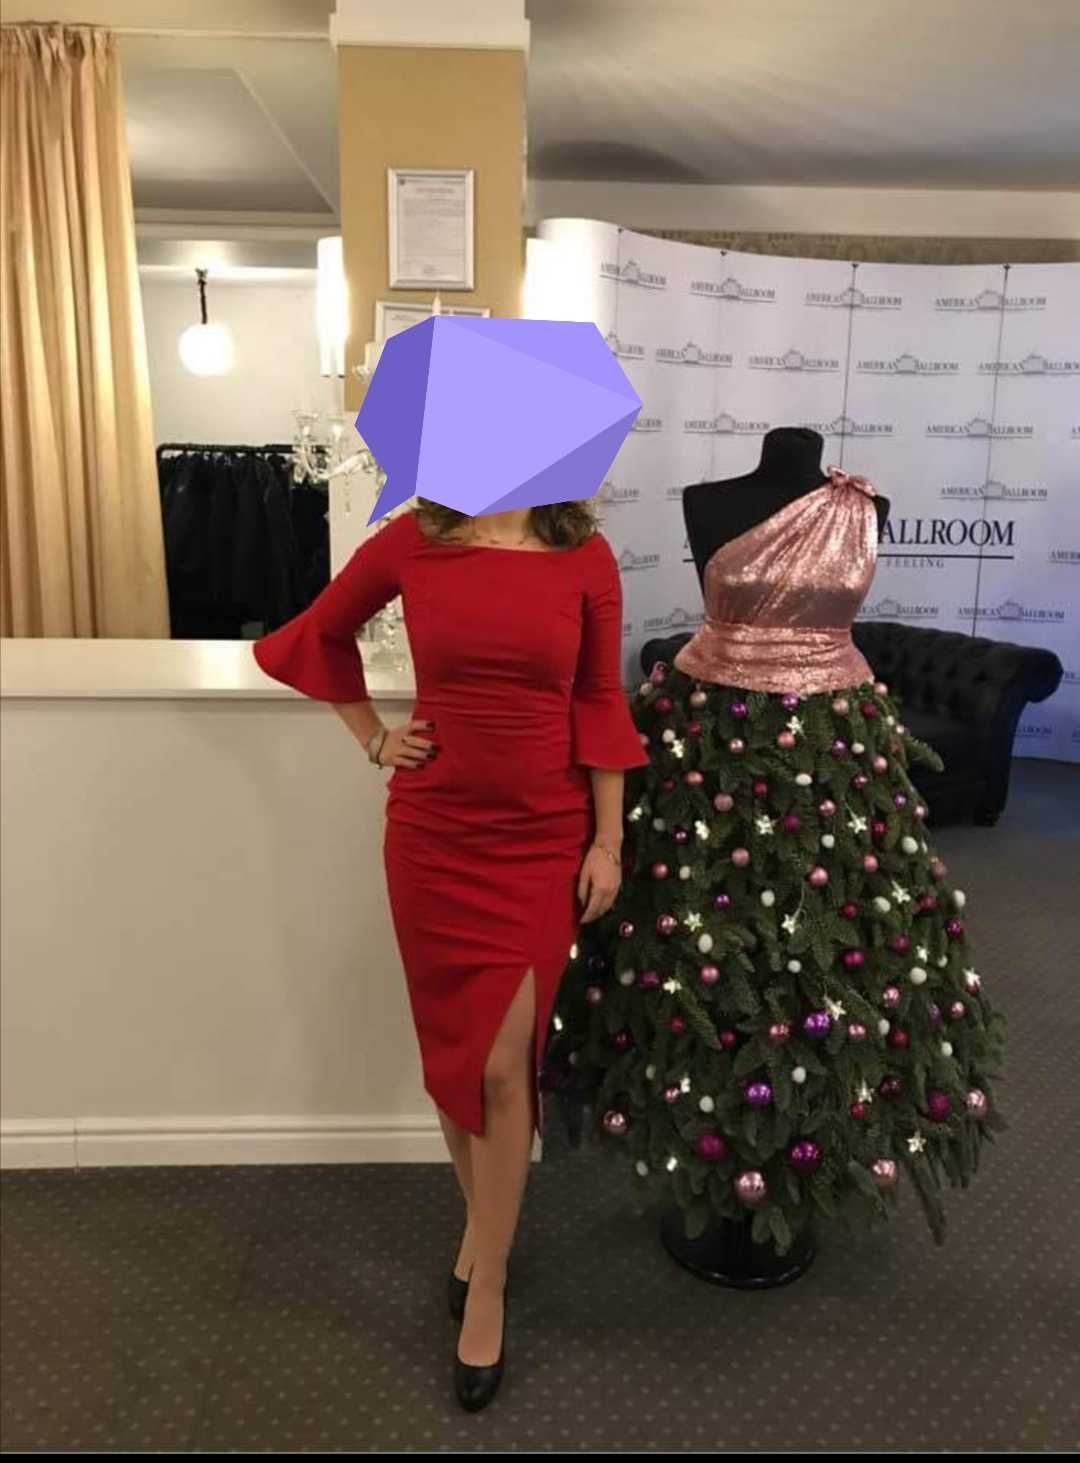 Rochie roșie Zara